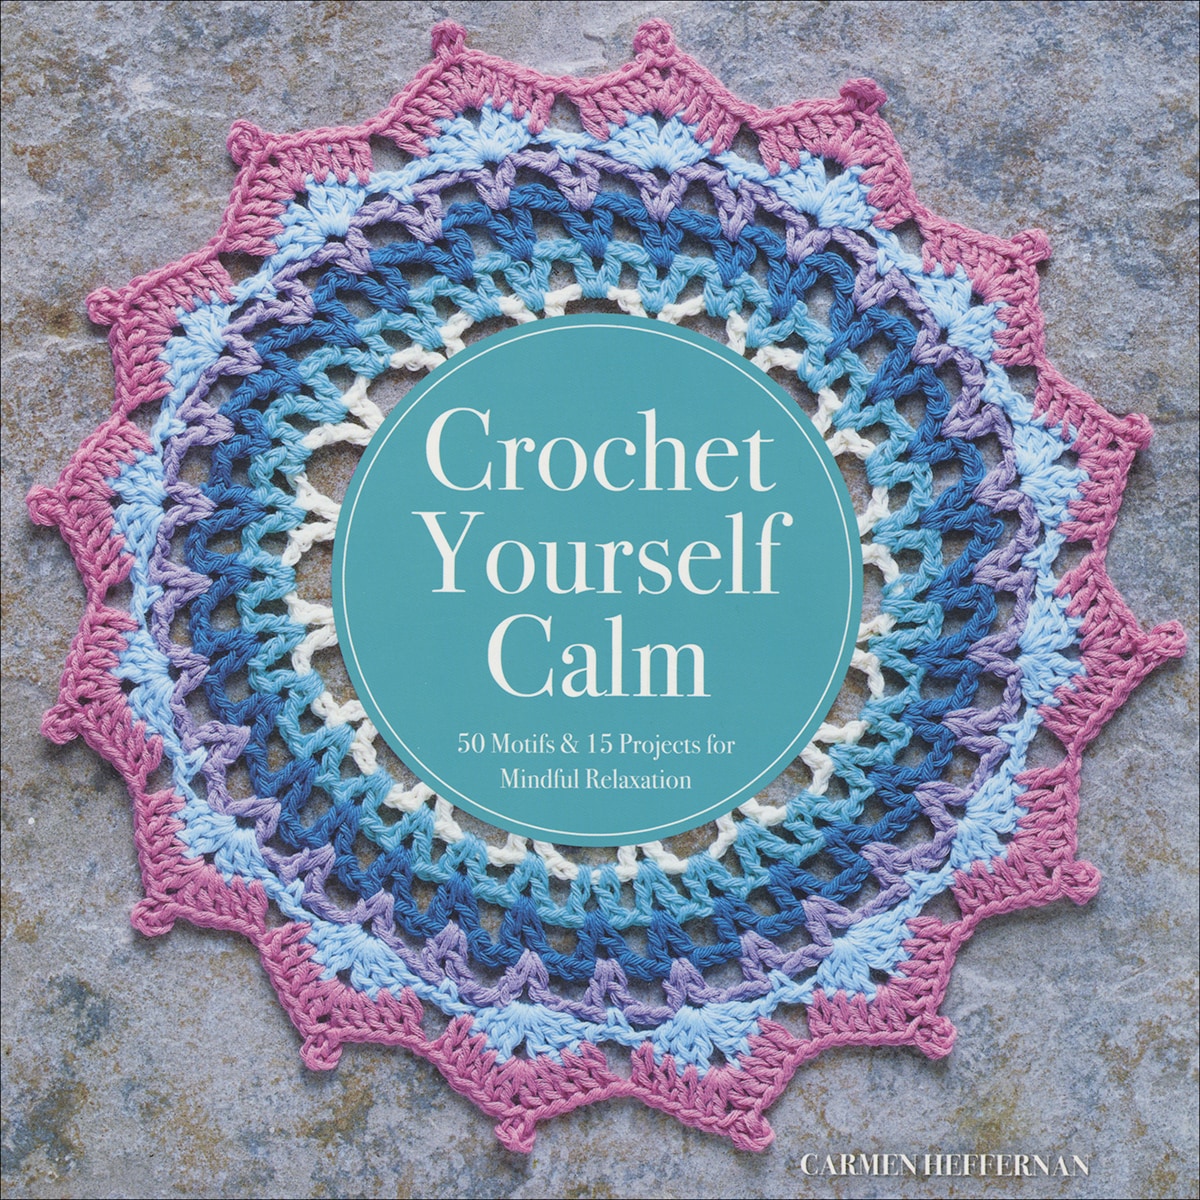 Books Crochet